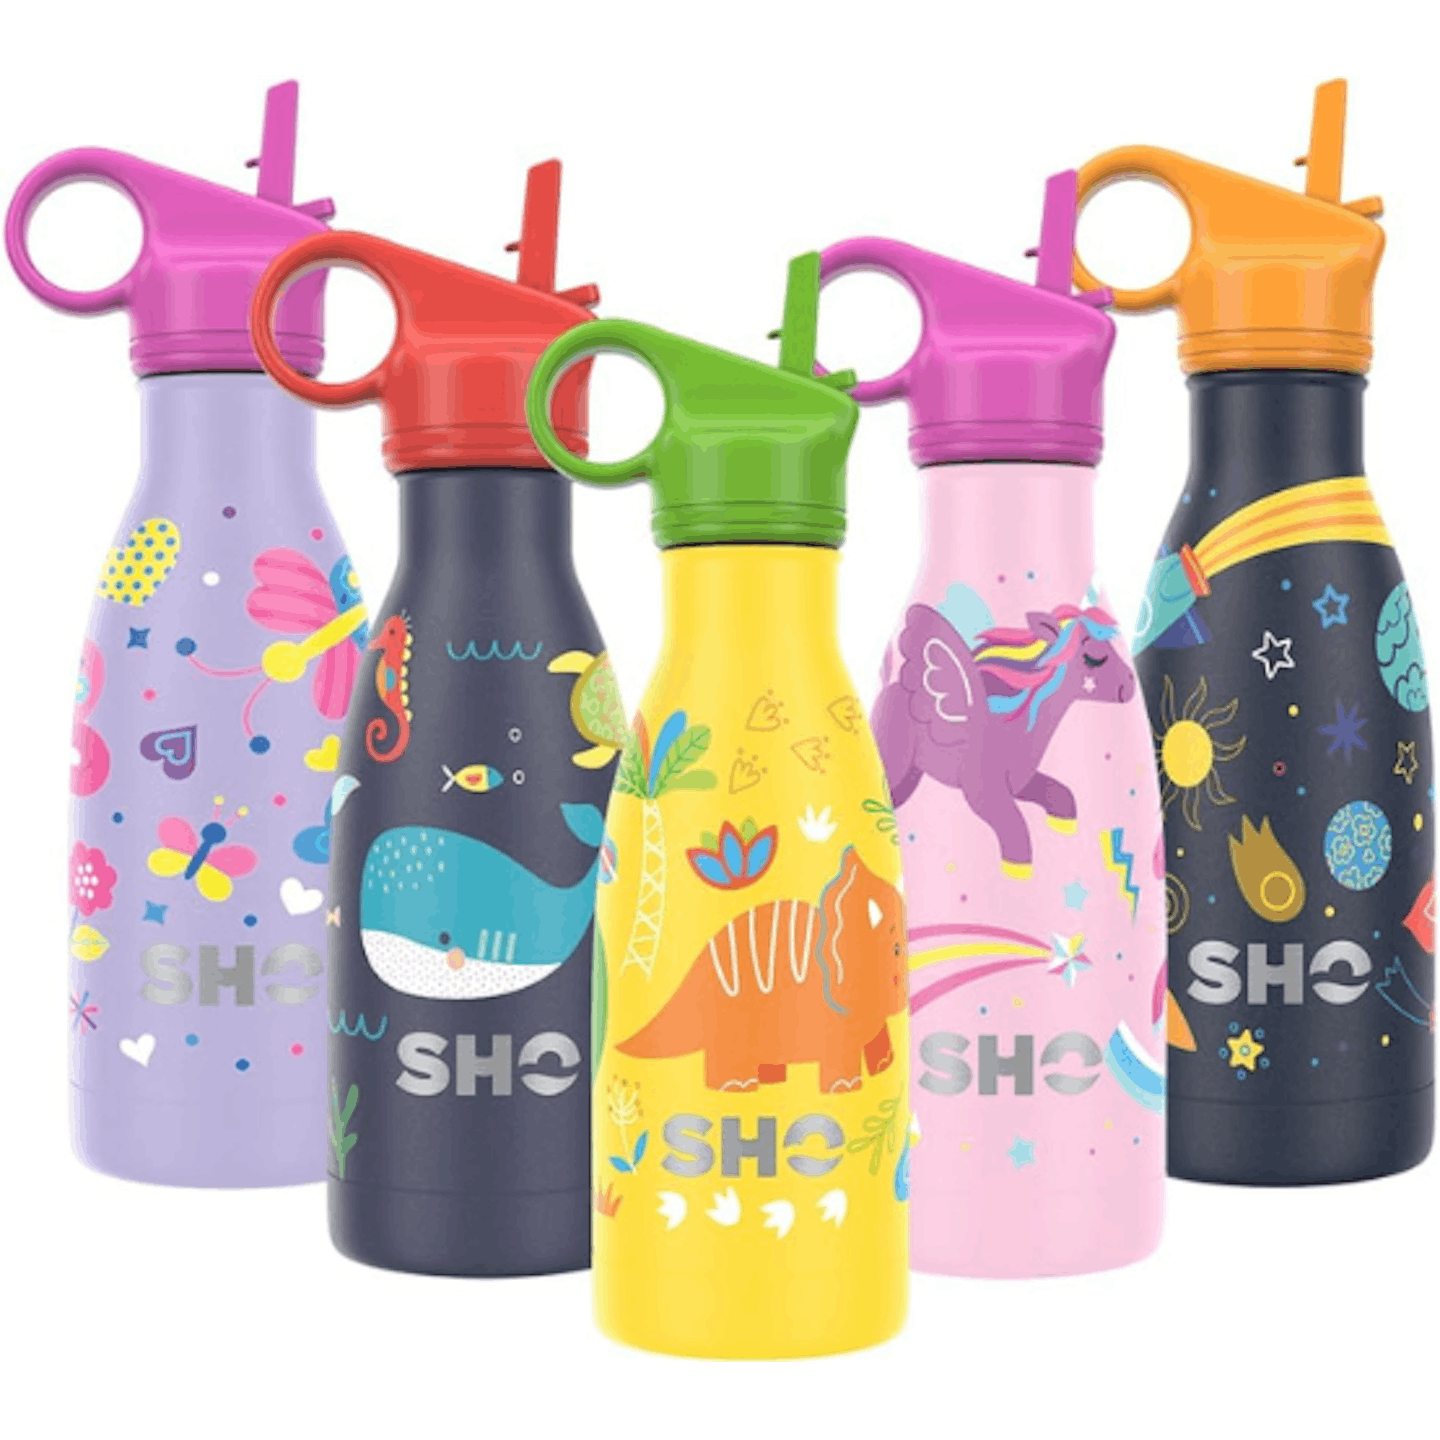 Sho water bottle